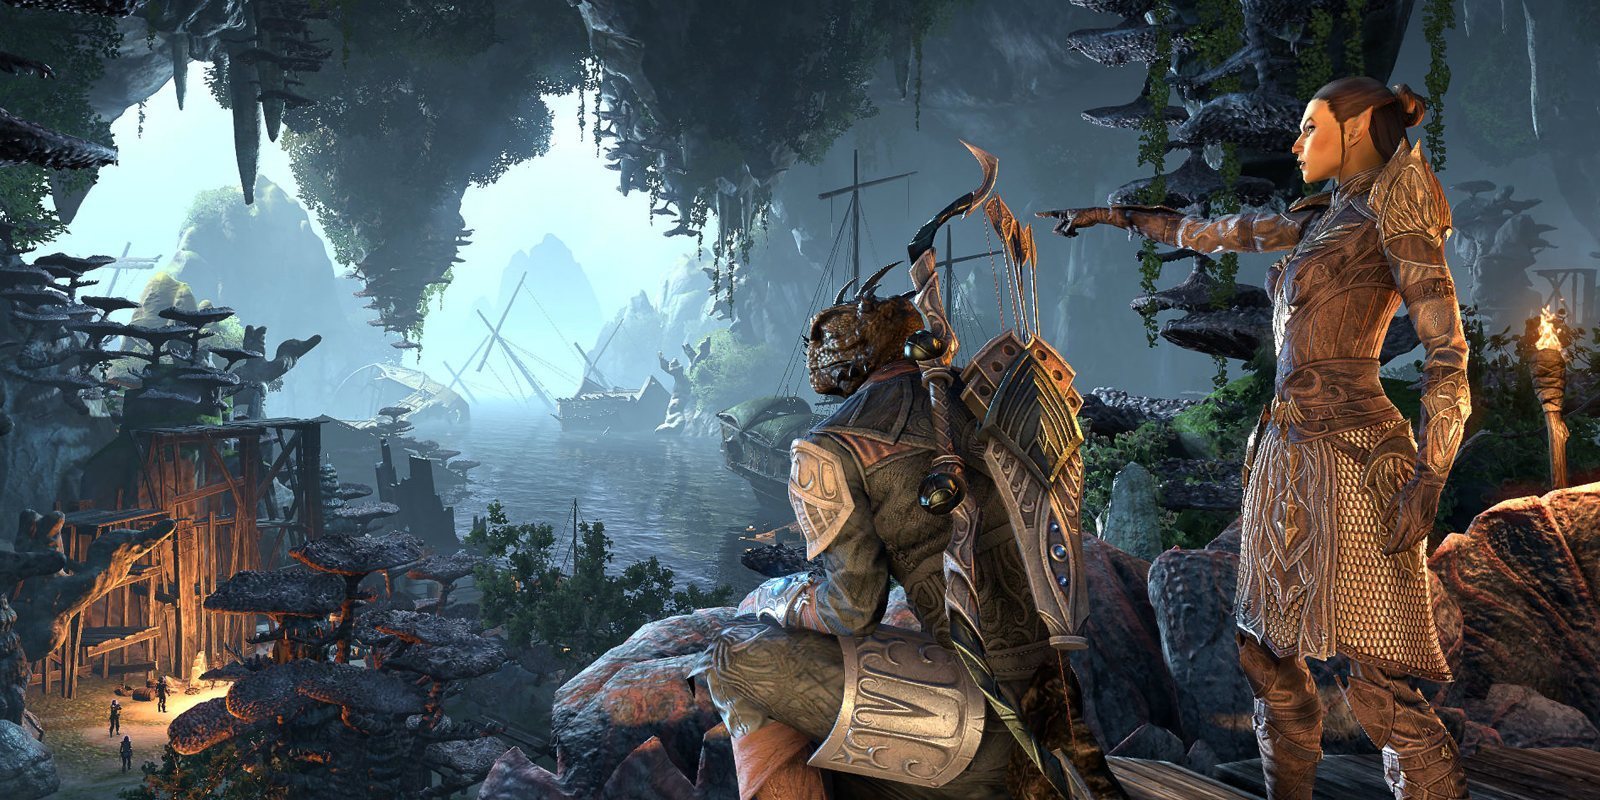 Bethesda confirma que 'The Elder Scrolls VI' no estará en el E3 2019